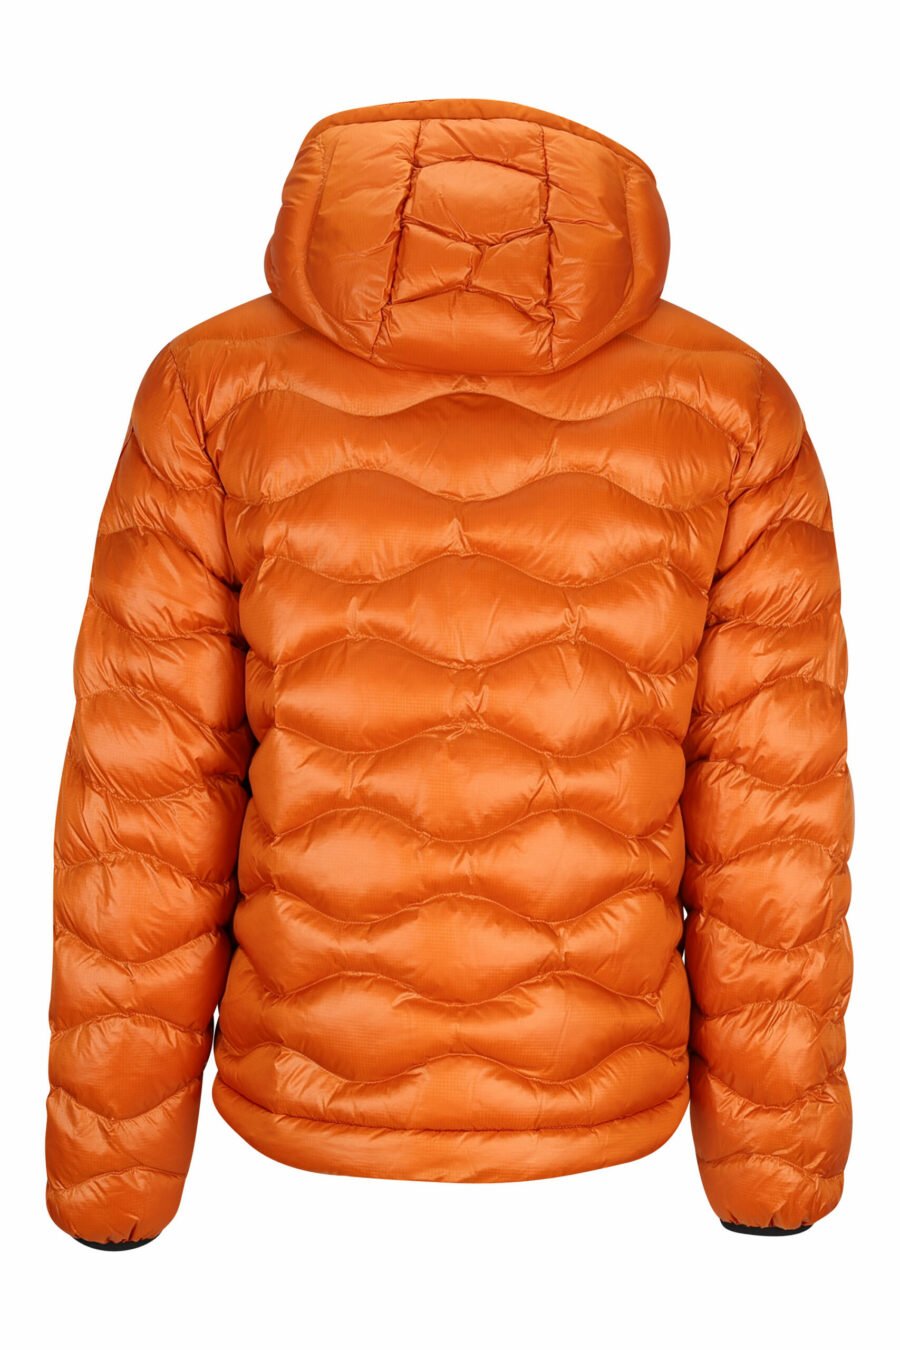 Veste à capuche orange avec lignes ondulées et doublure beige - 8058610697631 2 à l'échelle